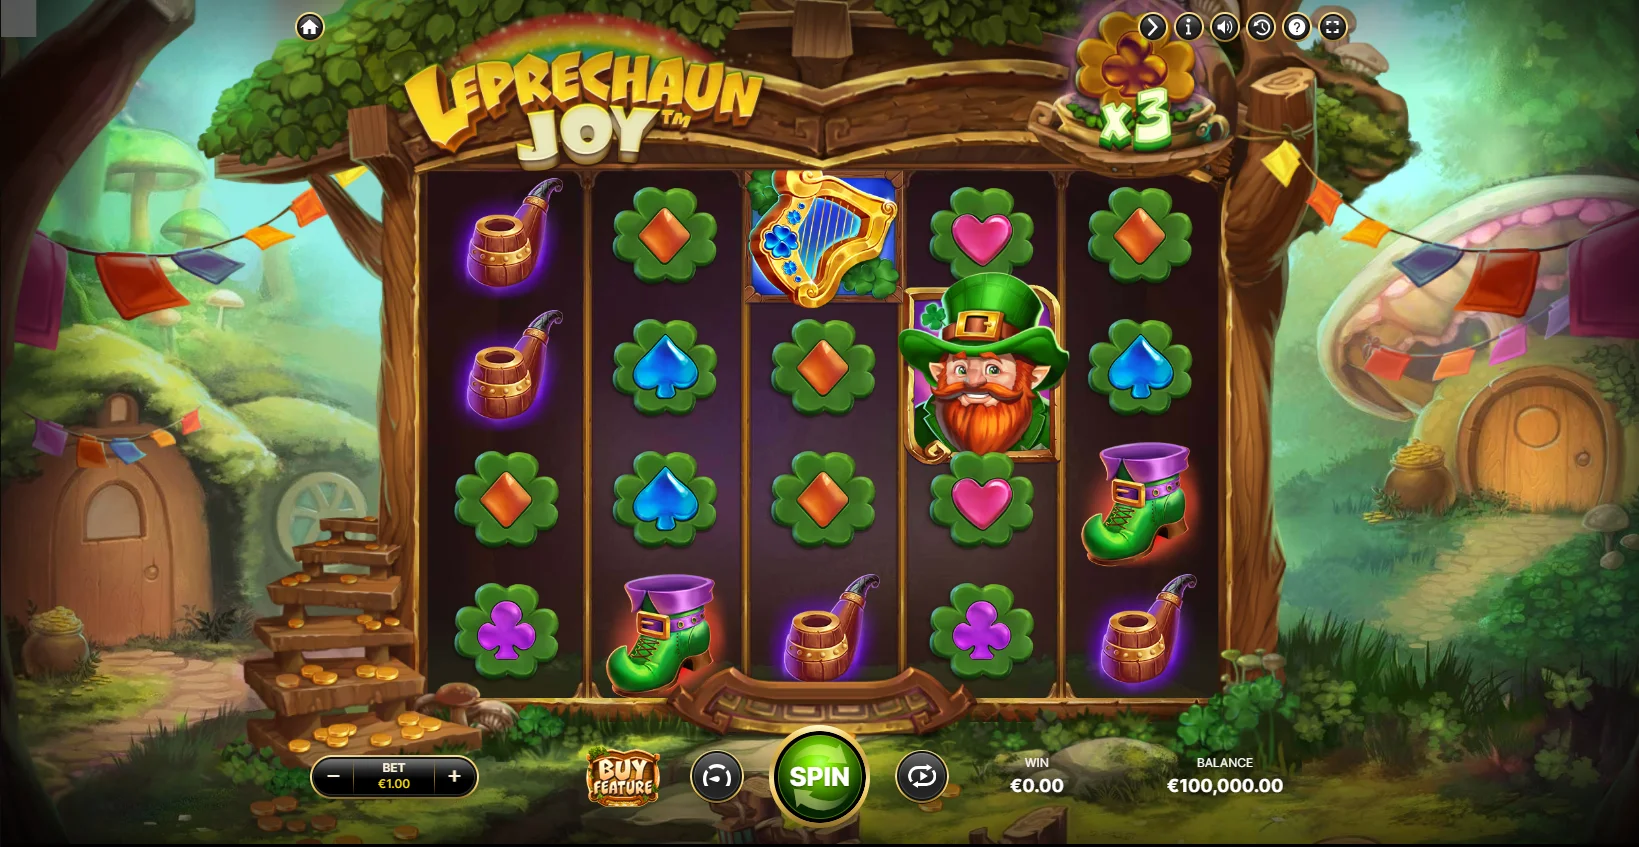 Leprechaun Joy Base Game